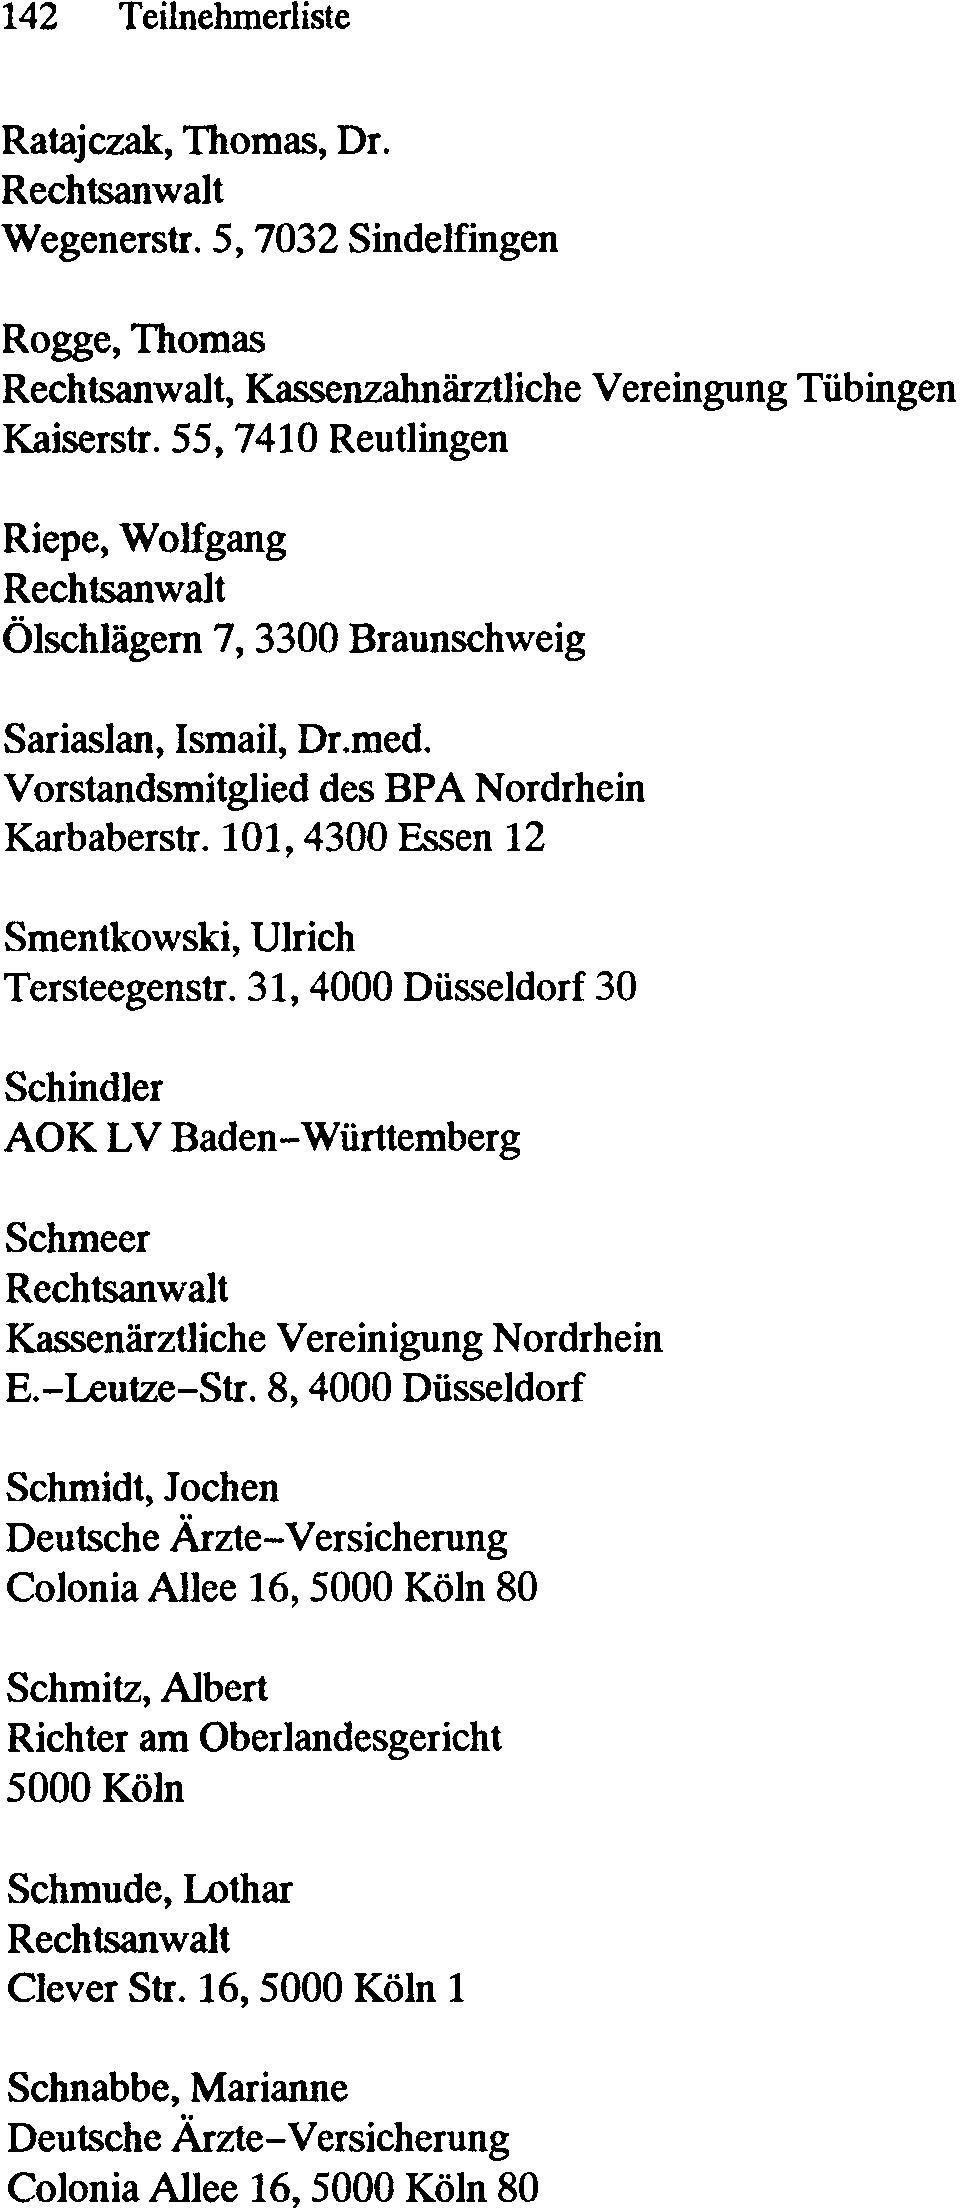 101,4300 Essen 12 Smentkowski, Ulrich Tersteegenstr. 31, 4000 Düsseldorf 30 Schindler AOK LV Baden-Württemberg Schmeer Kassenärztliche Vereinigung Nordrhein E.-Leutze-Str.